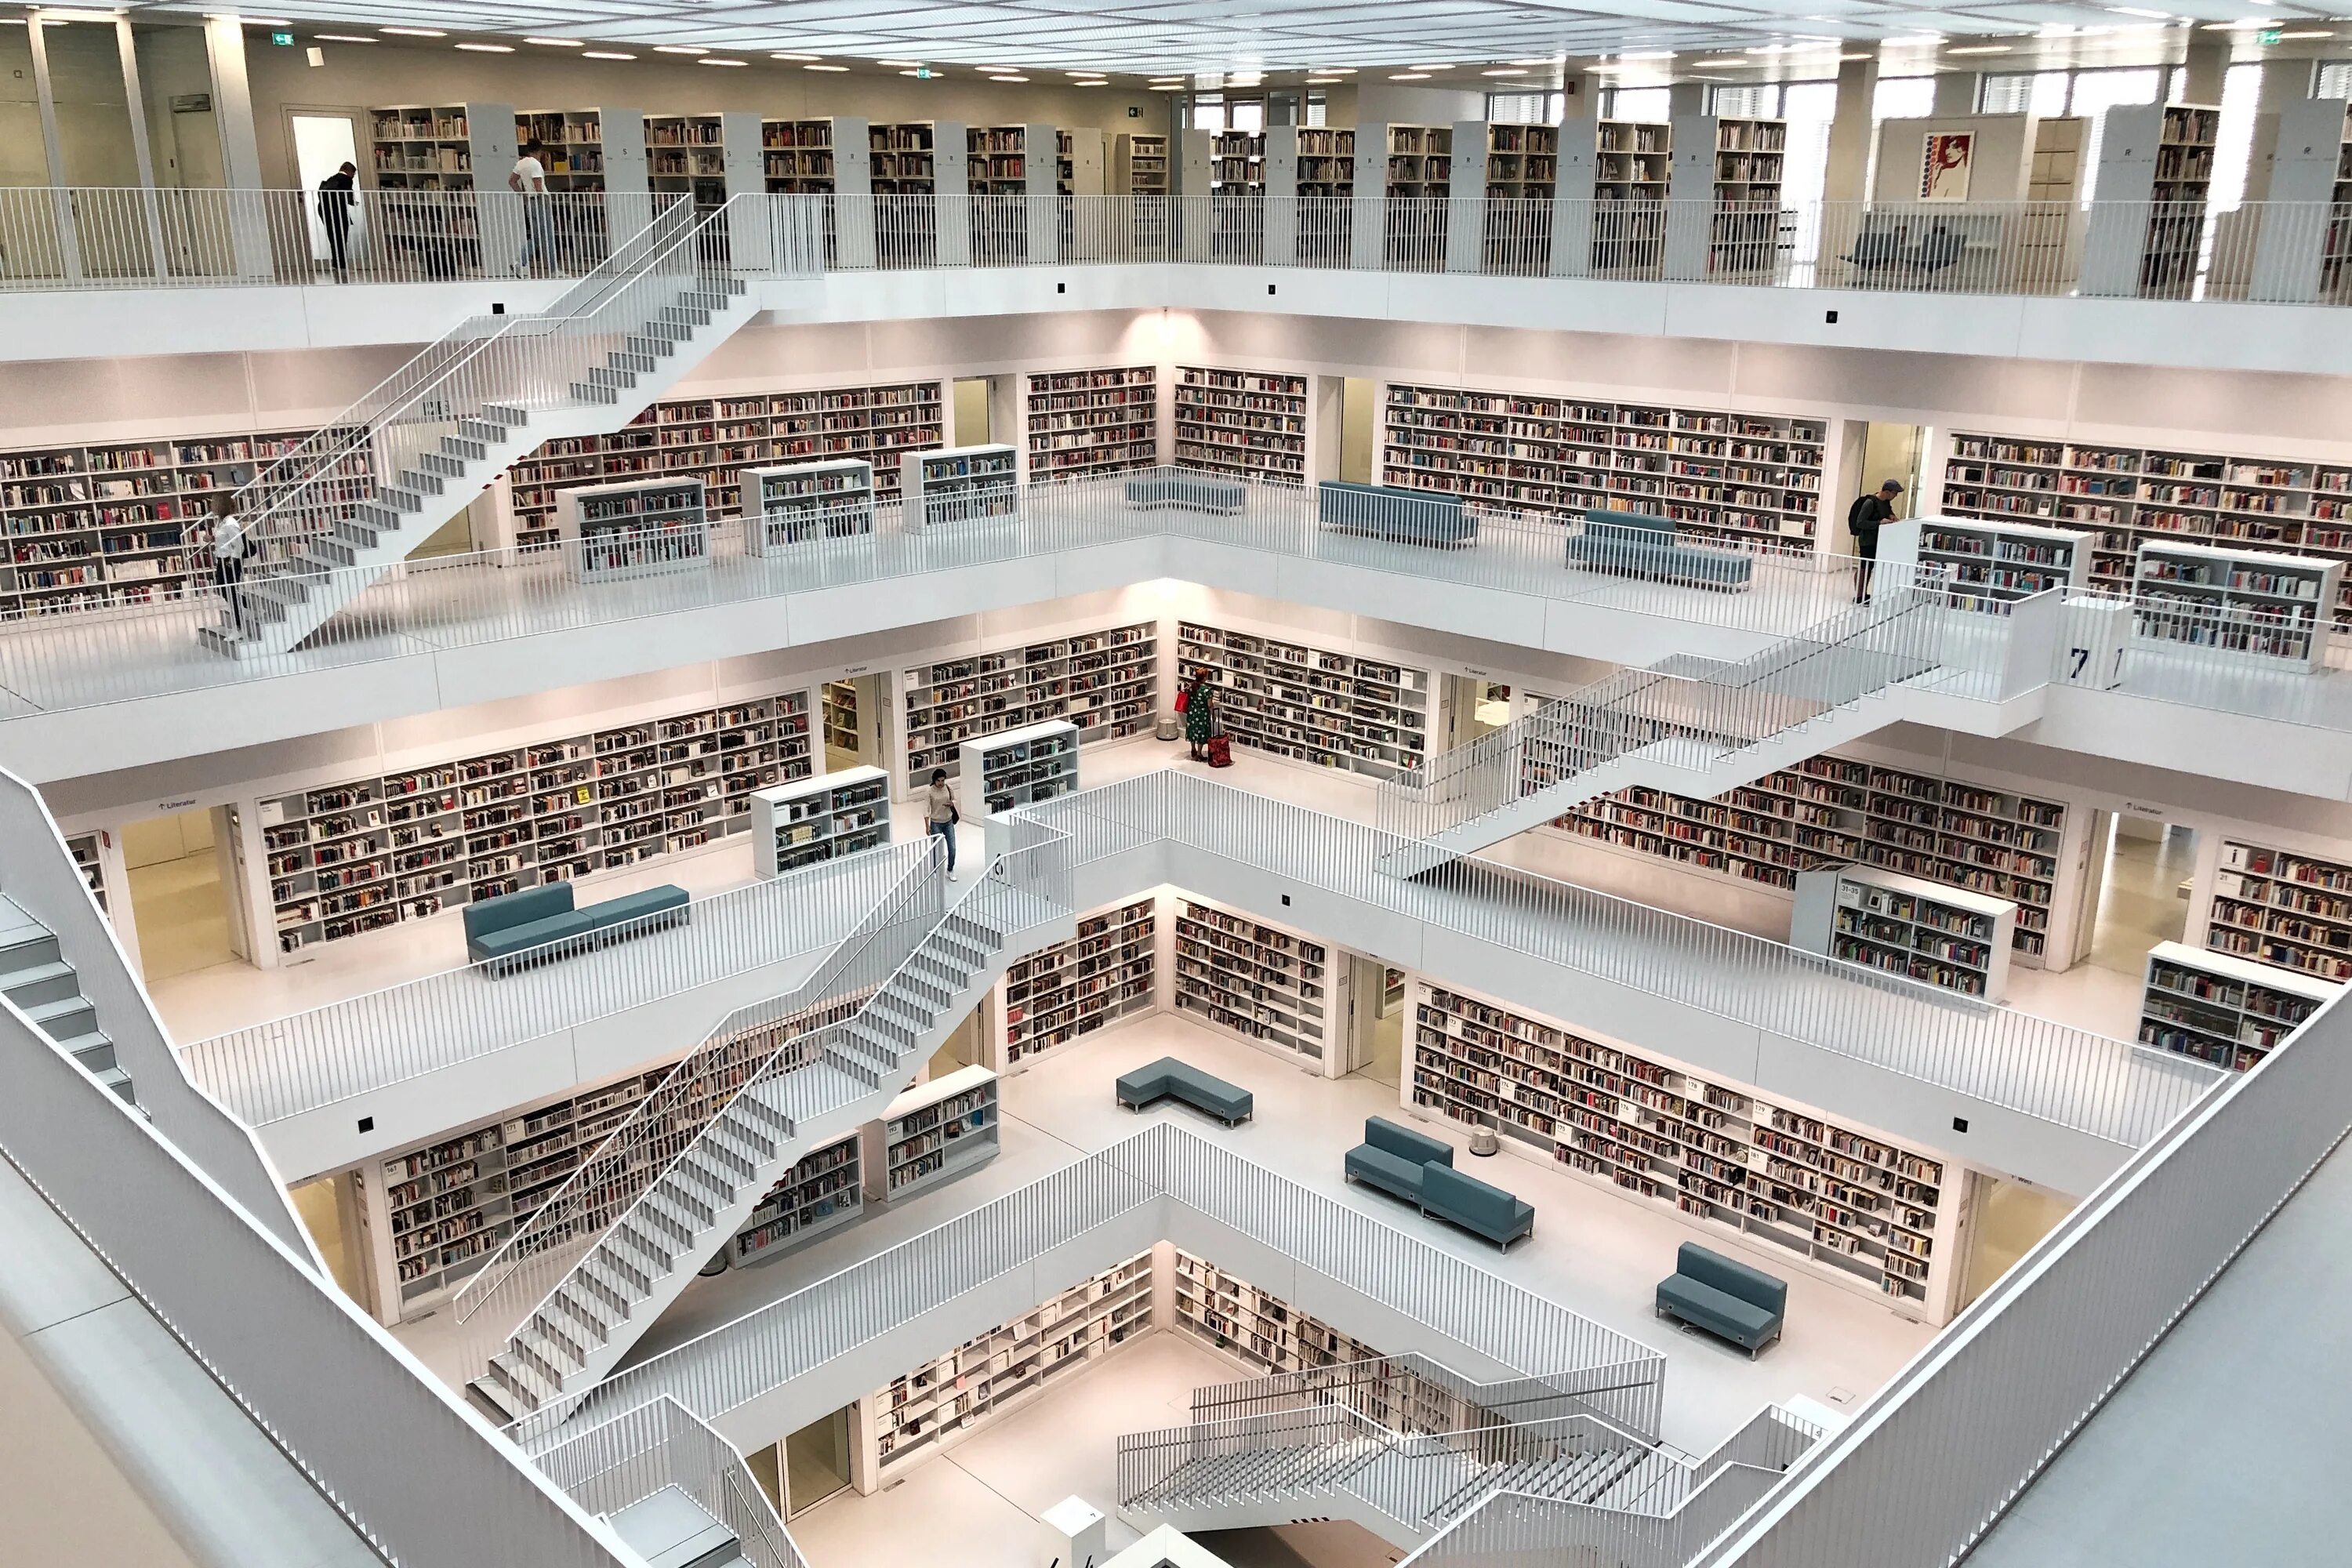 City library. Городская библиотека Штутгарта. Штутгартская городская библиотека, Германия. Штадт библиотека Штутгарта. Библиотека в Штутгарте Германия.